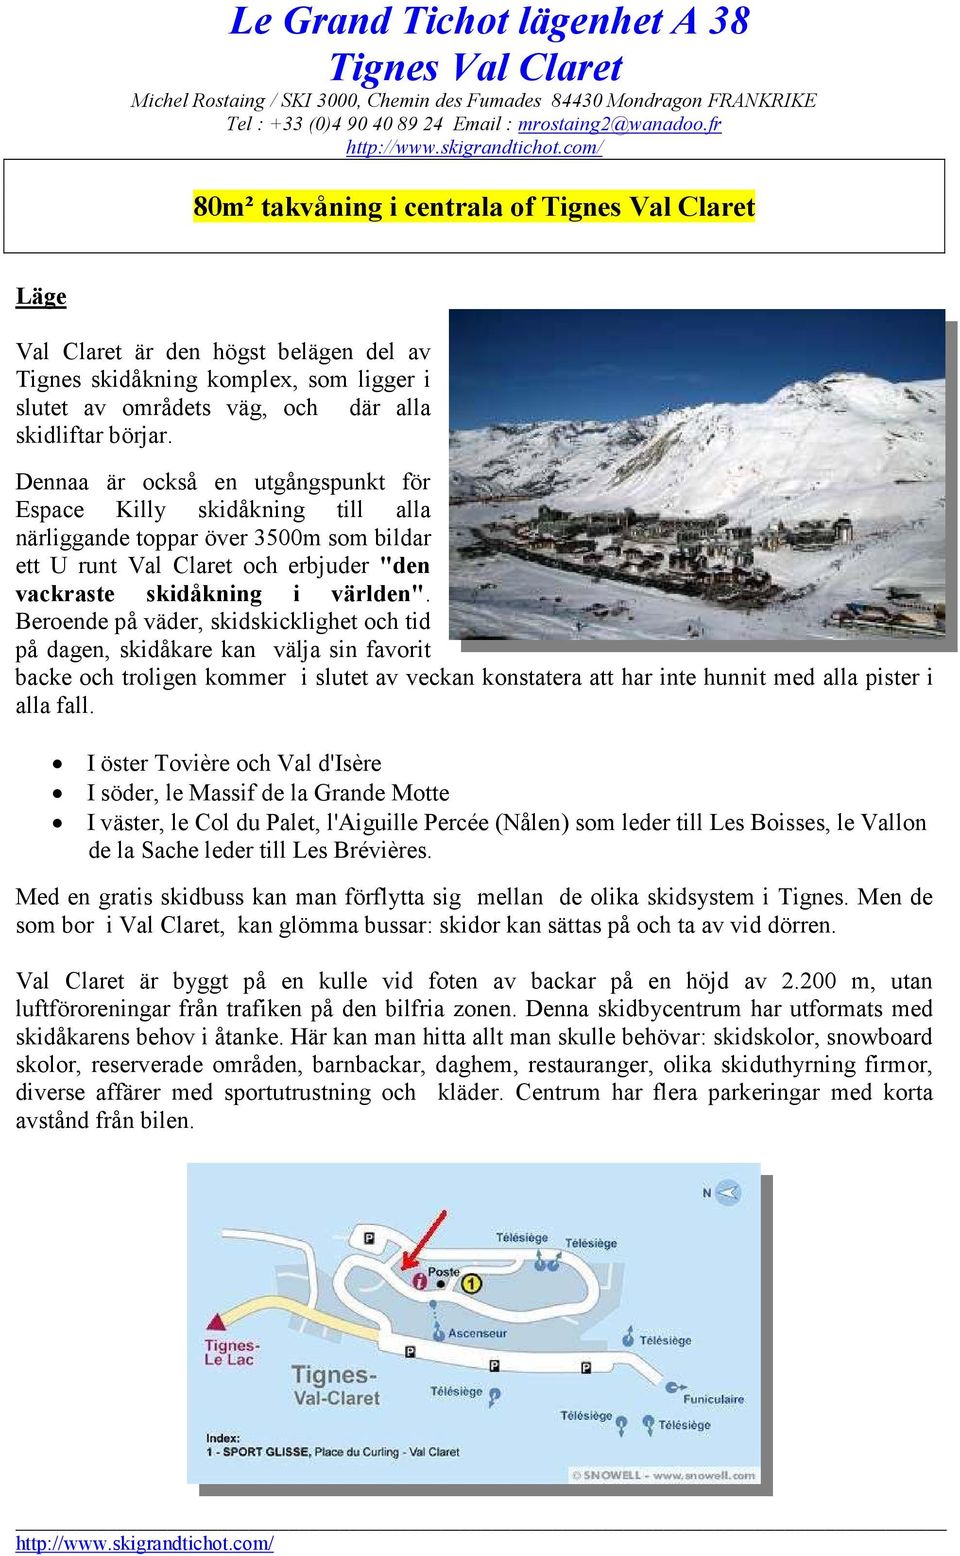 Dennaa är också en utgångspunkt för Espace Killy skidåkning till alla närliggande toppar över 3500m som bildar ett U runt Val Claret och erbjuder "den vackraste skidåkning i världen".